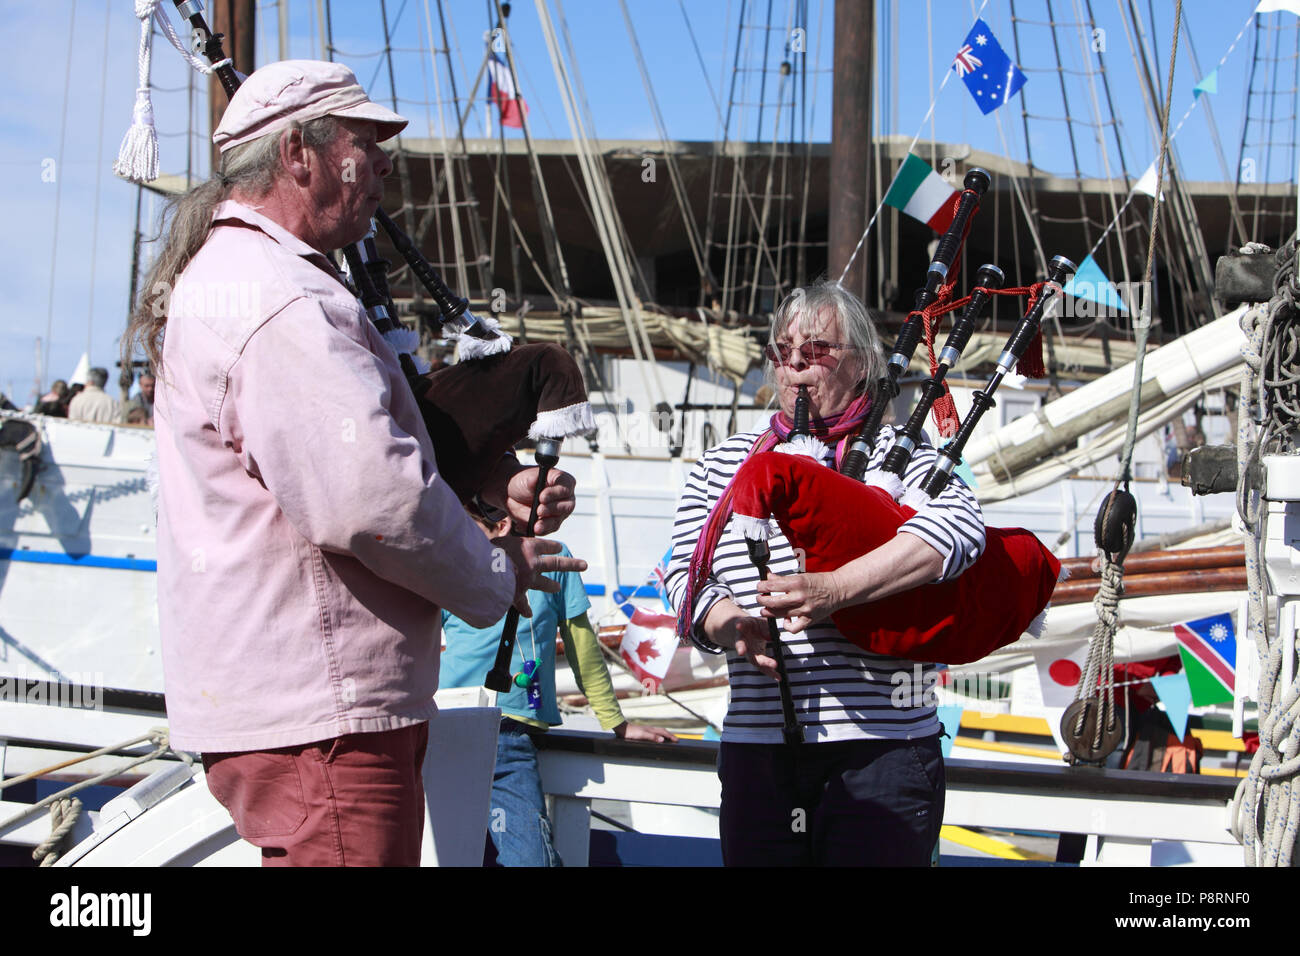 Fête des traditions maritimes 2012. Port de Sète.  F 34 Animation musicale sur un bateau. Stock Photo